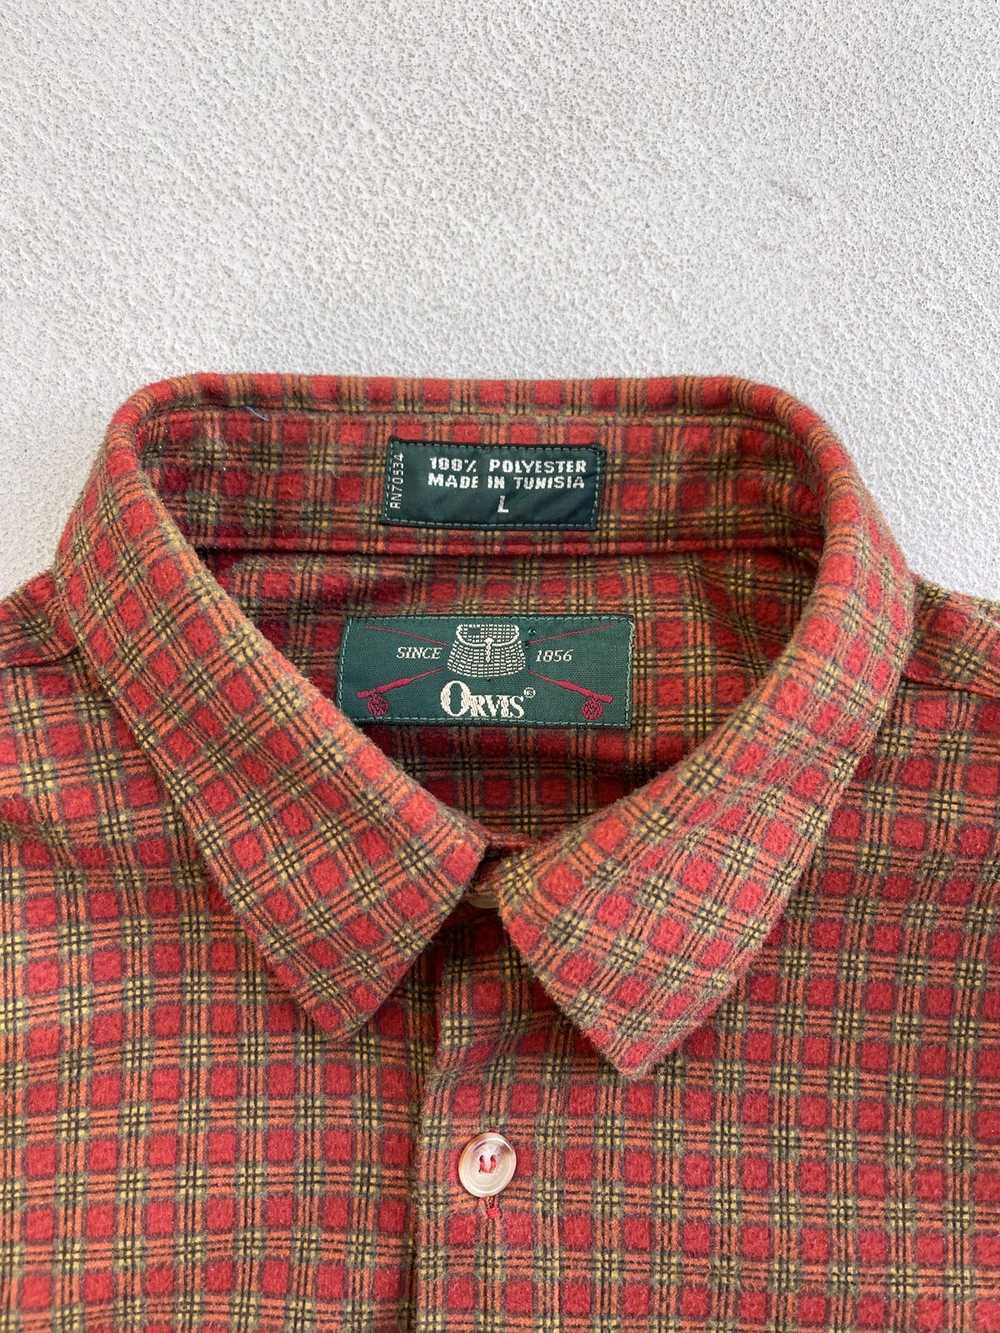 Vintage 1980s Orvis Pocket Flannel Shirt - image 3